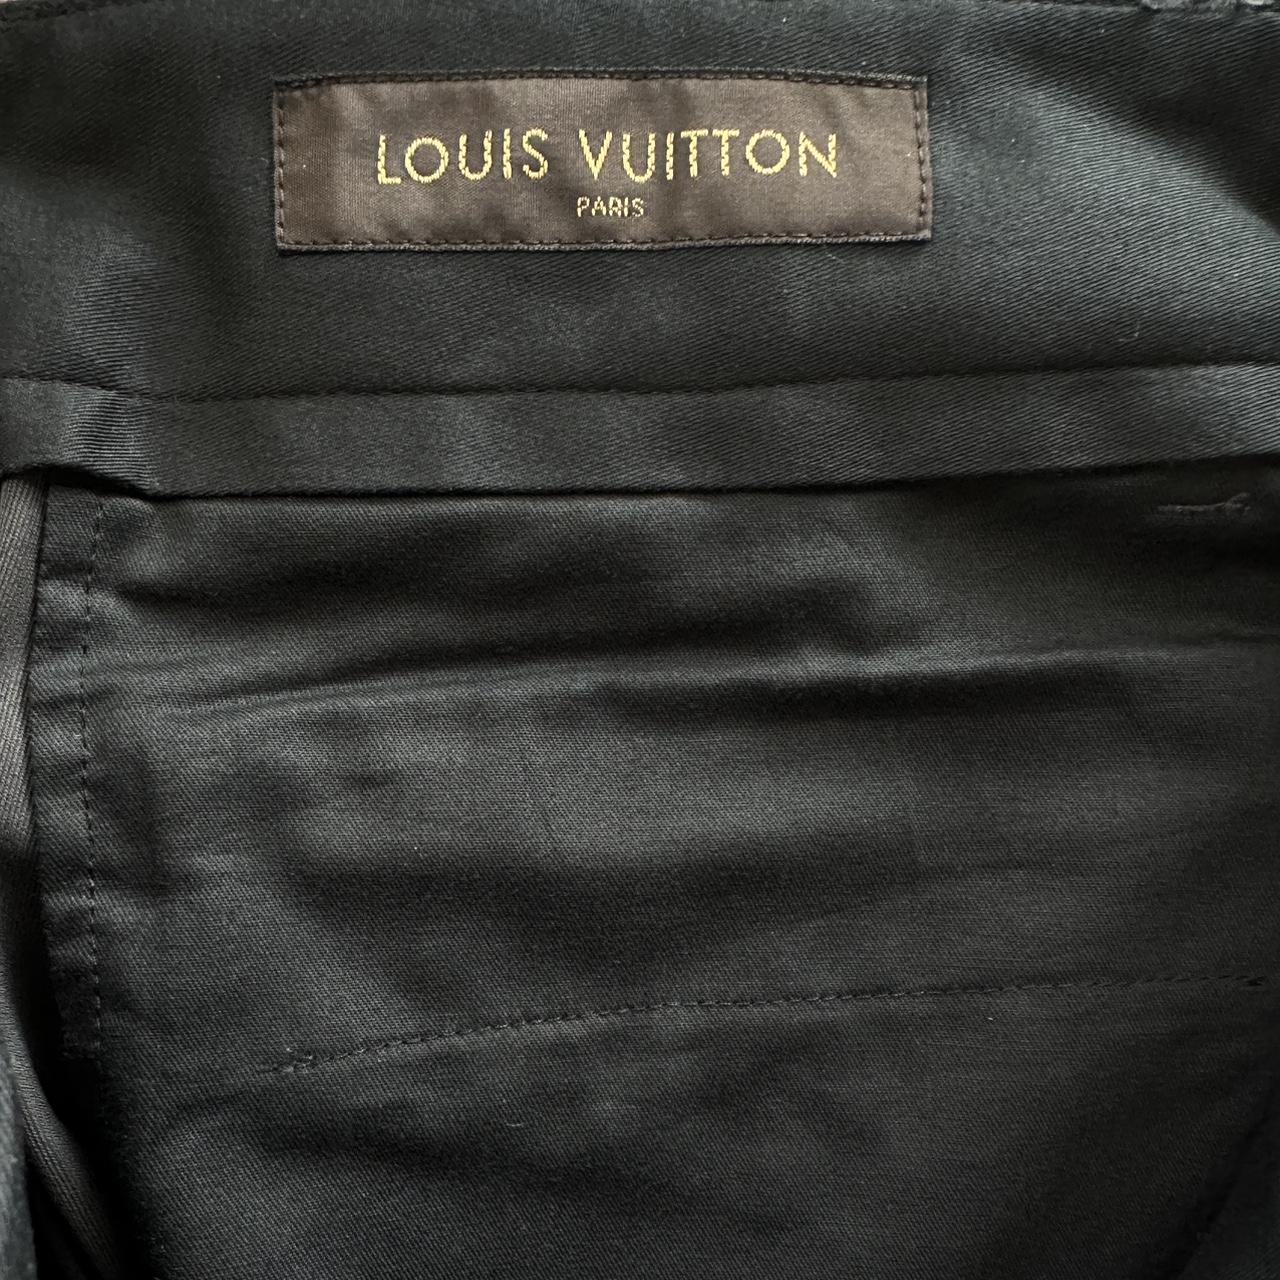 Louis Vuitton dress pants Brand new never worn - Depop